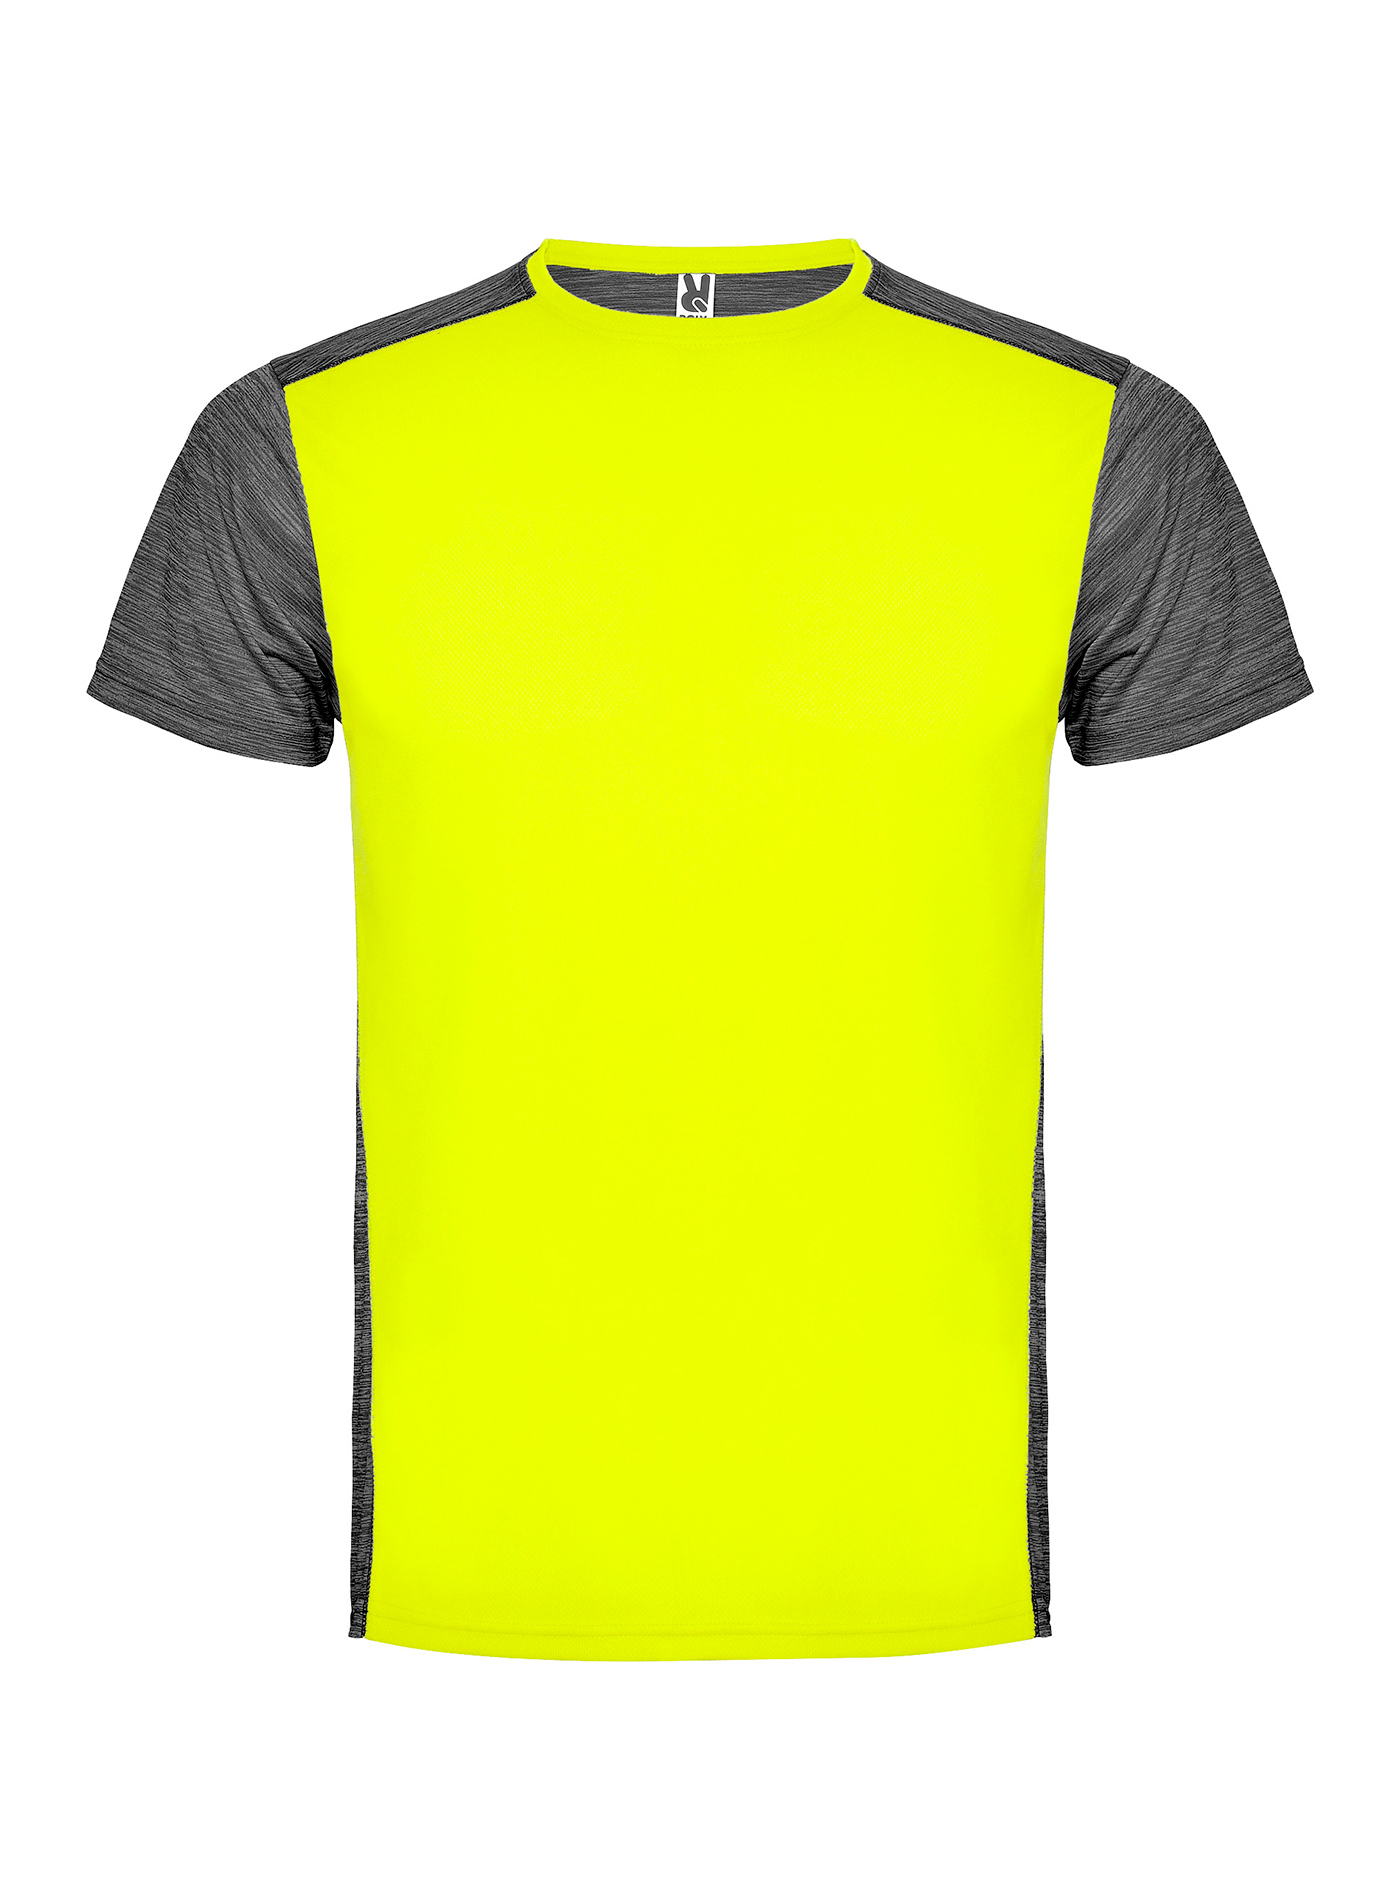 Pánské/Dětské sportovní tričko Roly Zolder - Zářivá žlutá s černou XL (13/14)